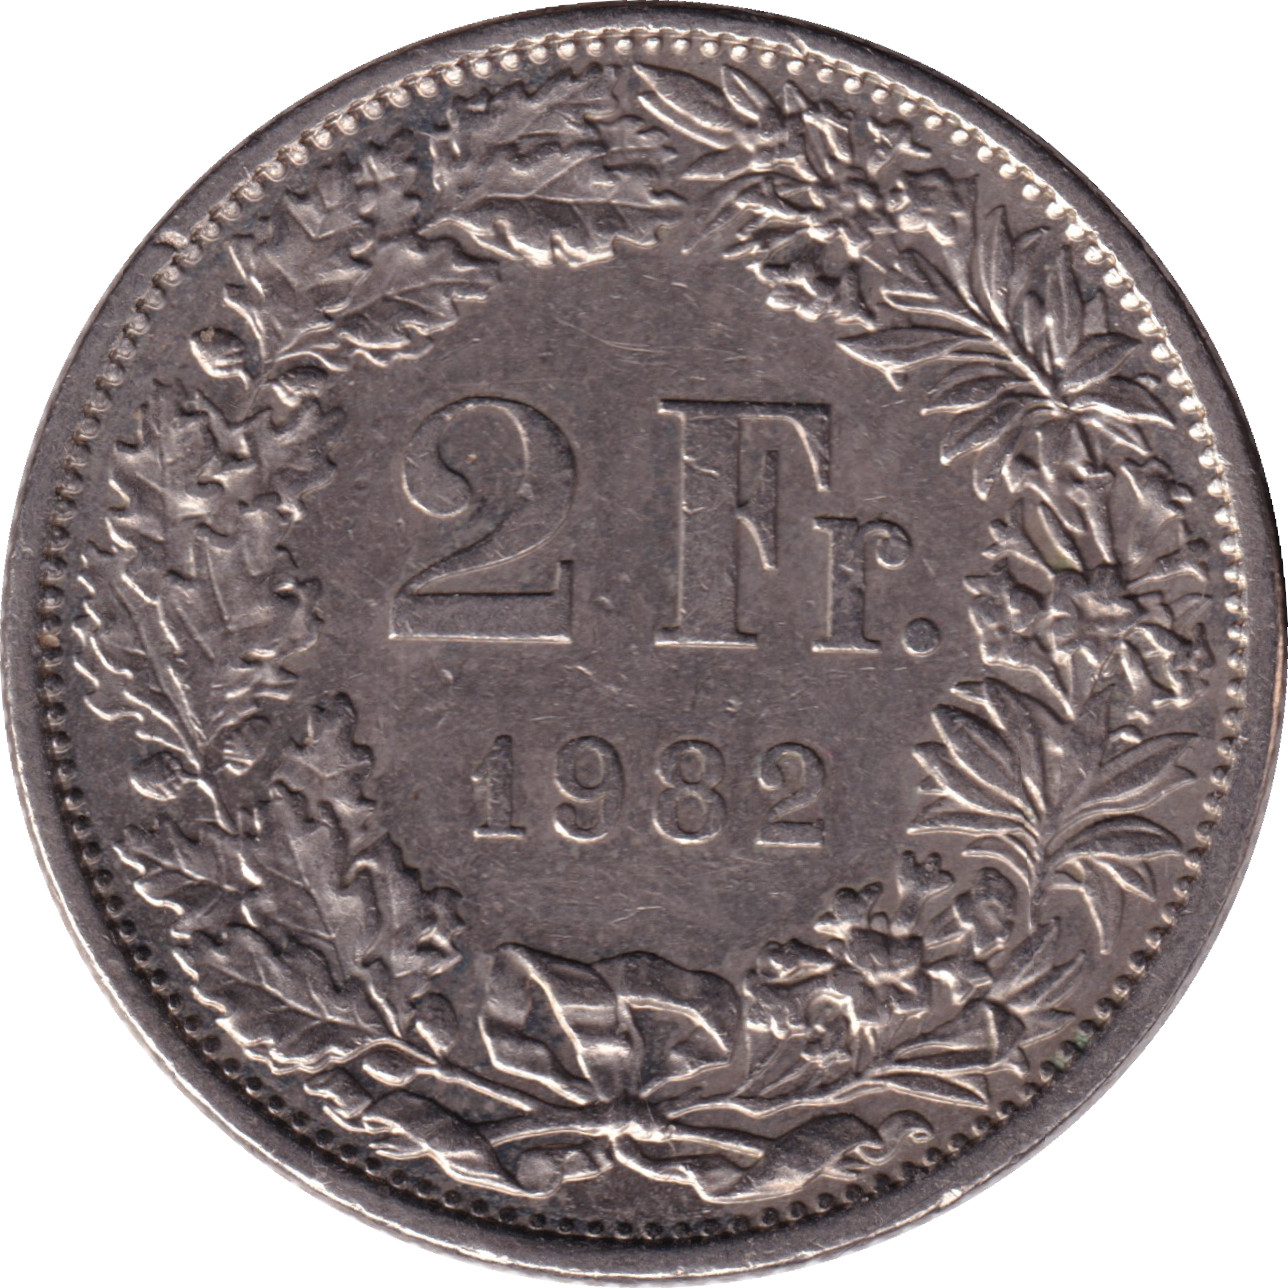 2 francs - Helvetia debout